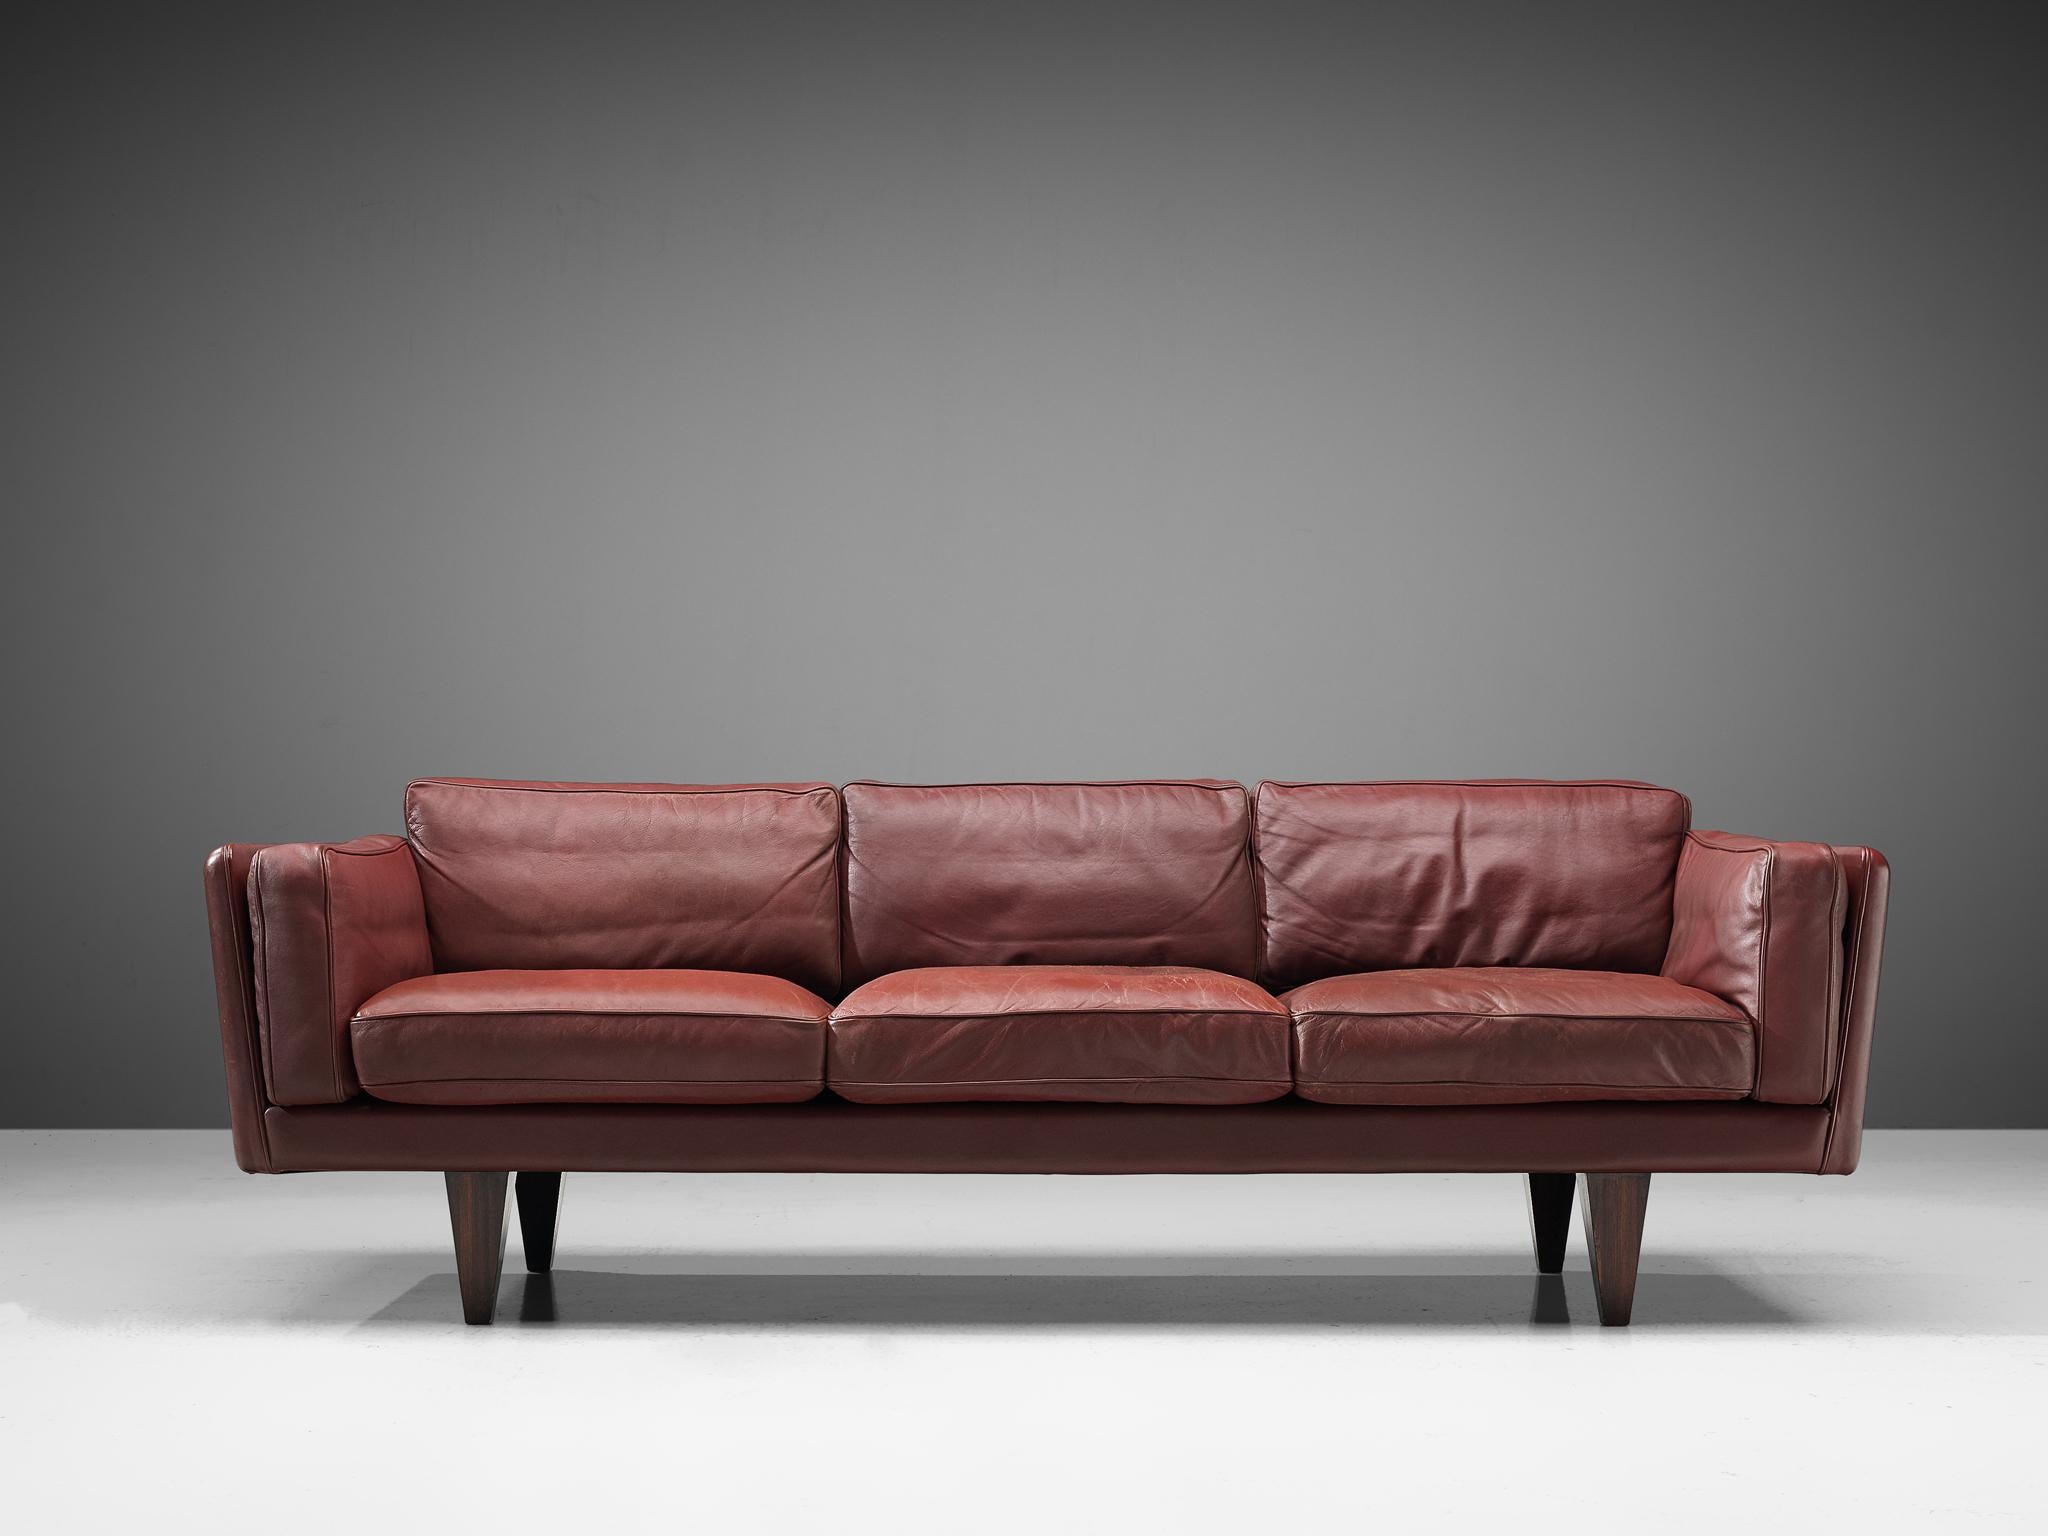 Illum Wikkelsø for Holger Christiansen, sofa model 'V11', leather, rosewood, Denmark 1960s.

Illum Wikkelsø's three-seat sofa 'V11